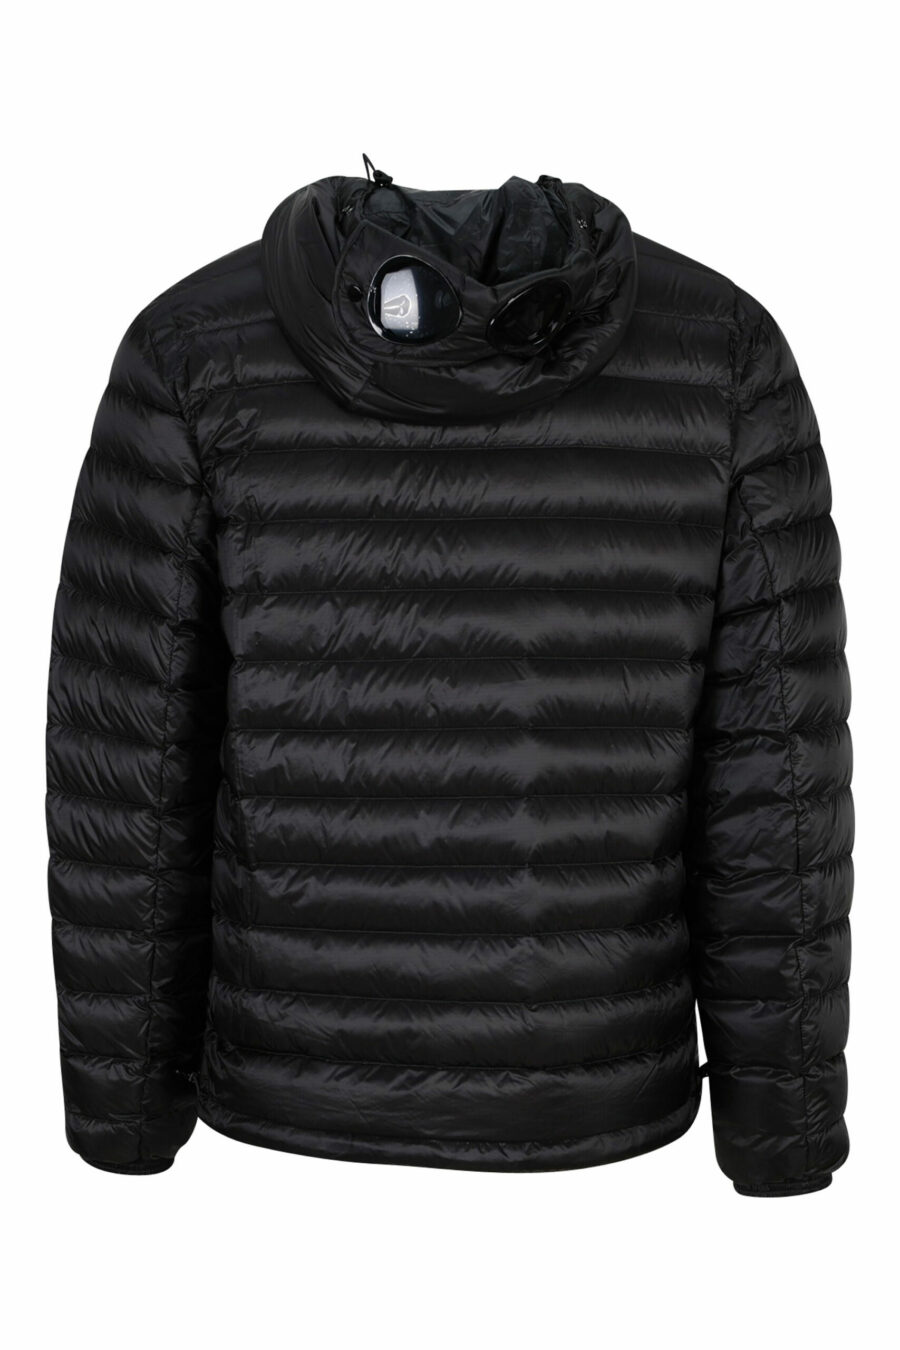 Black hooded jacket with goggle logo - 7620943629262 2 scaled